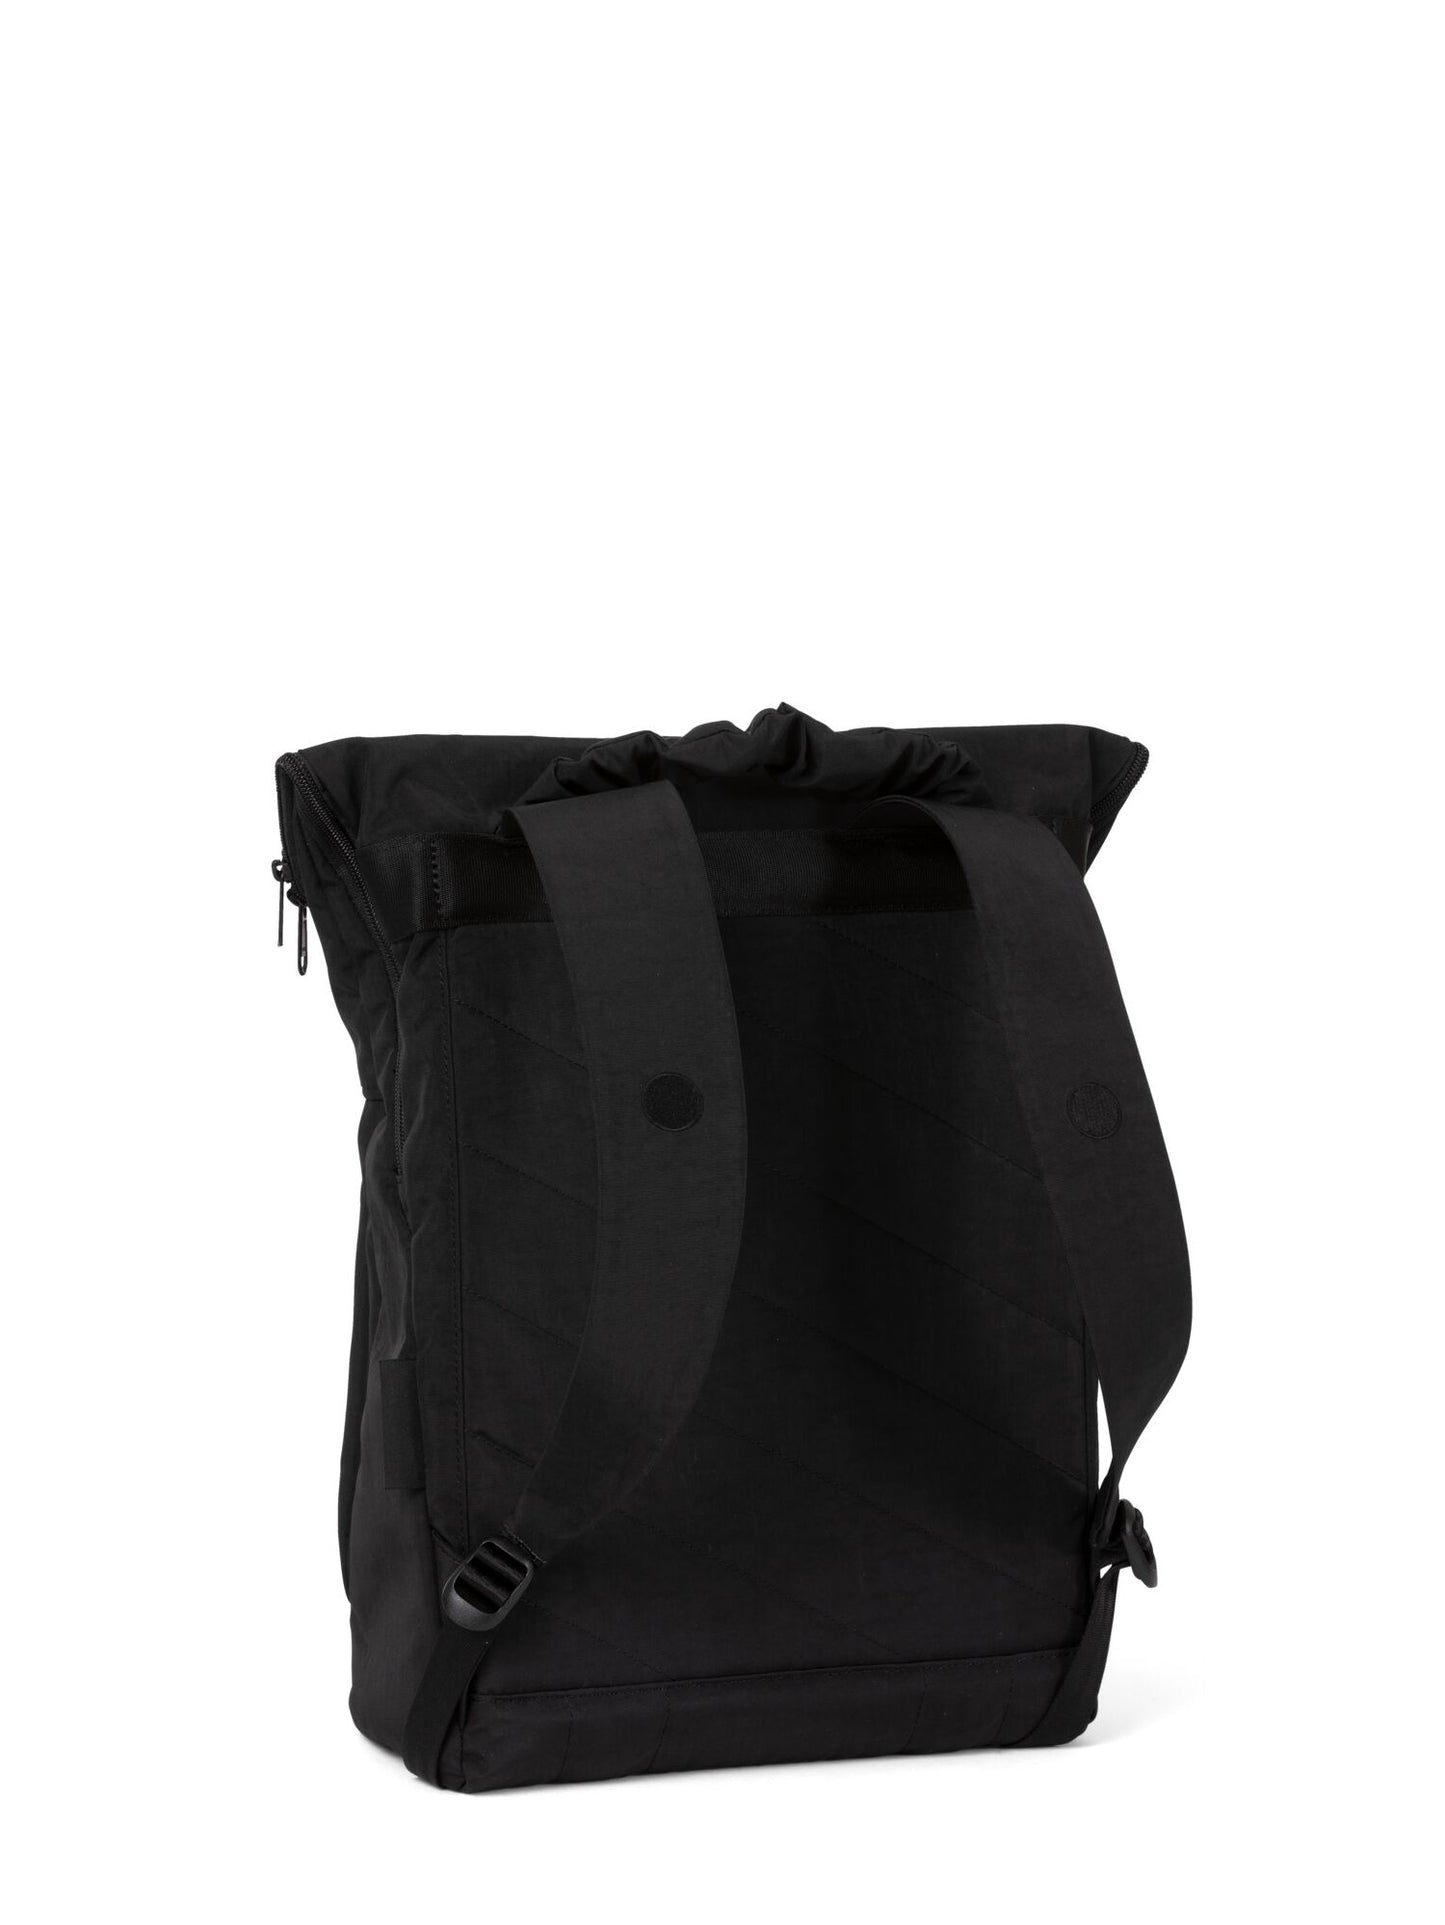 pinqponq-backpack-Klak-Crinkle-Black-back